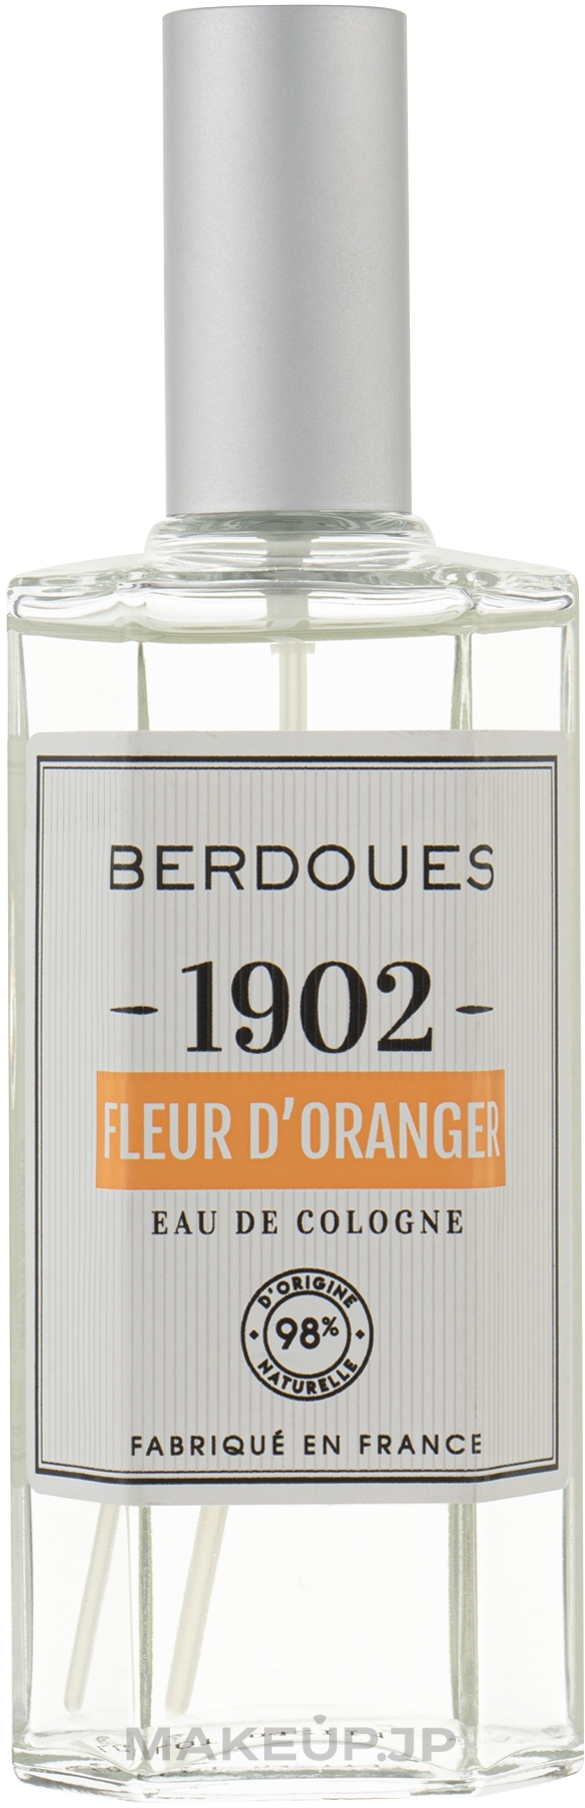 Berdoues 1902 Fleur d'Oranger - Eau de Cologne — photo 125 ml